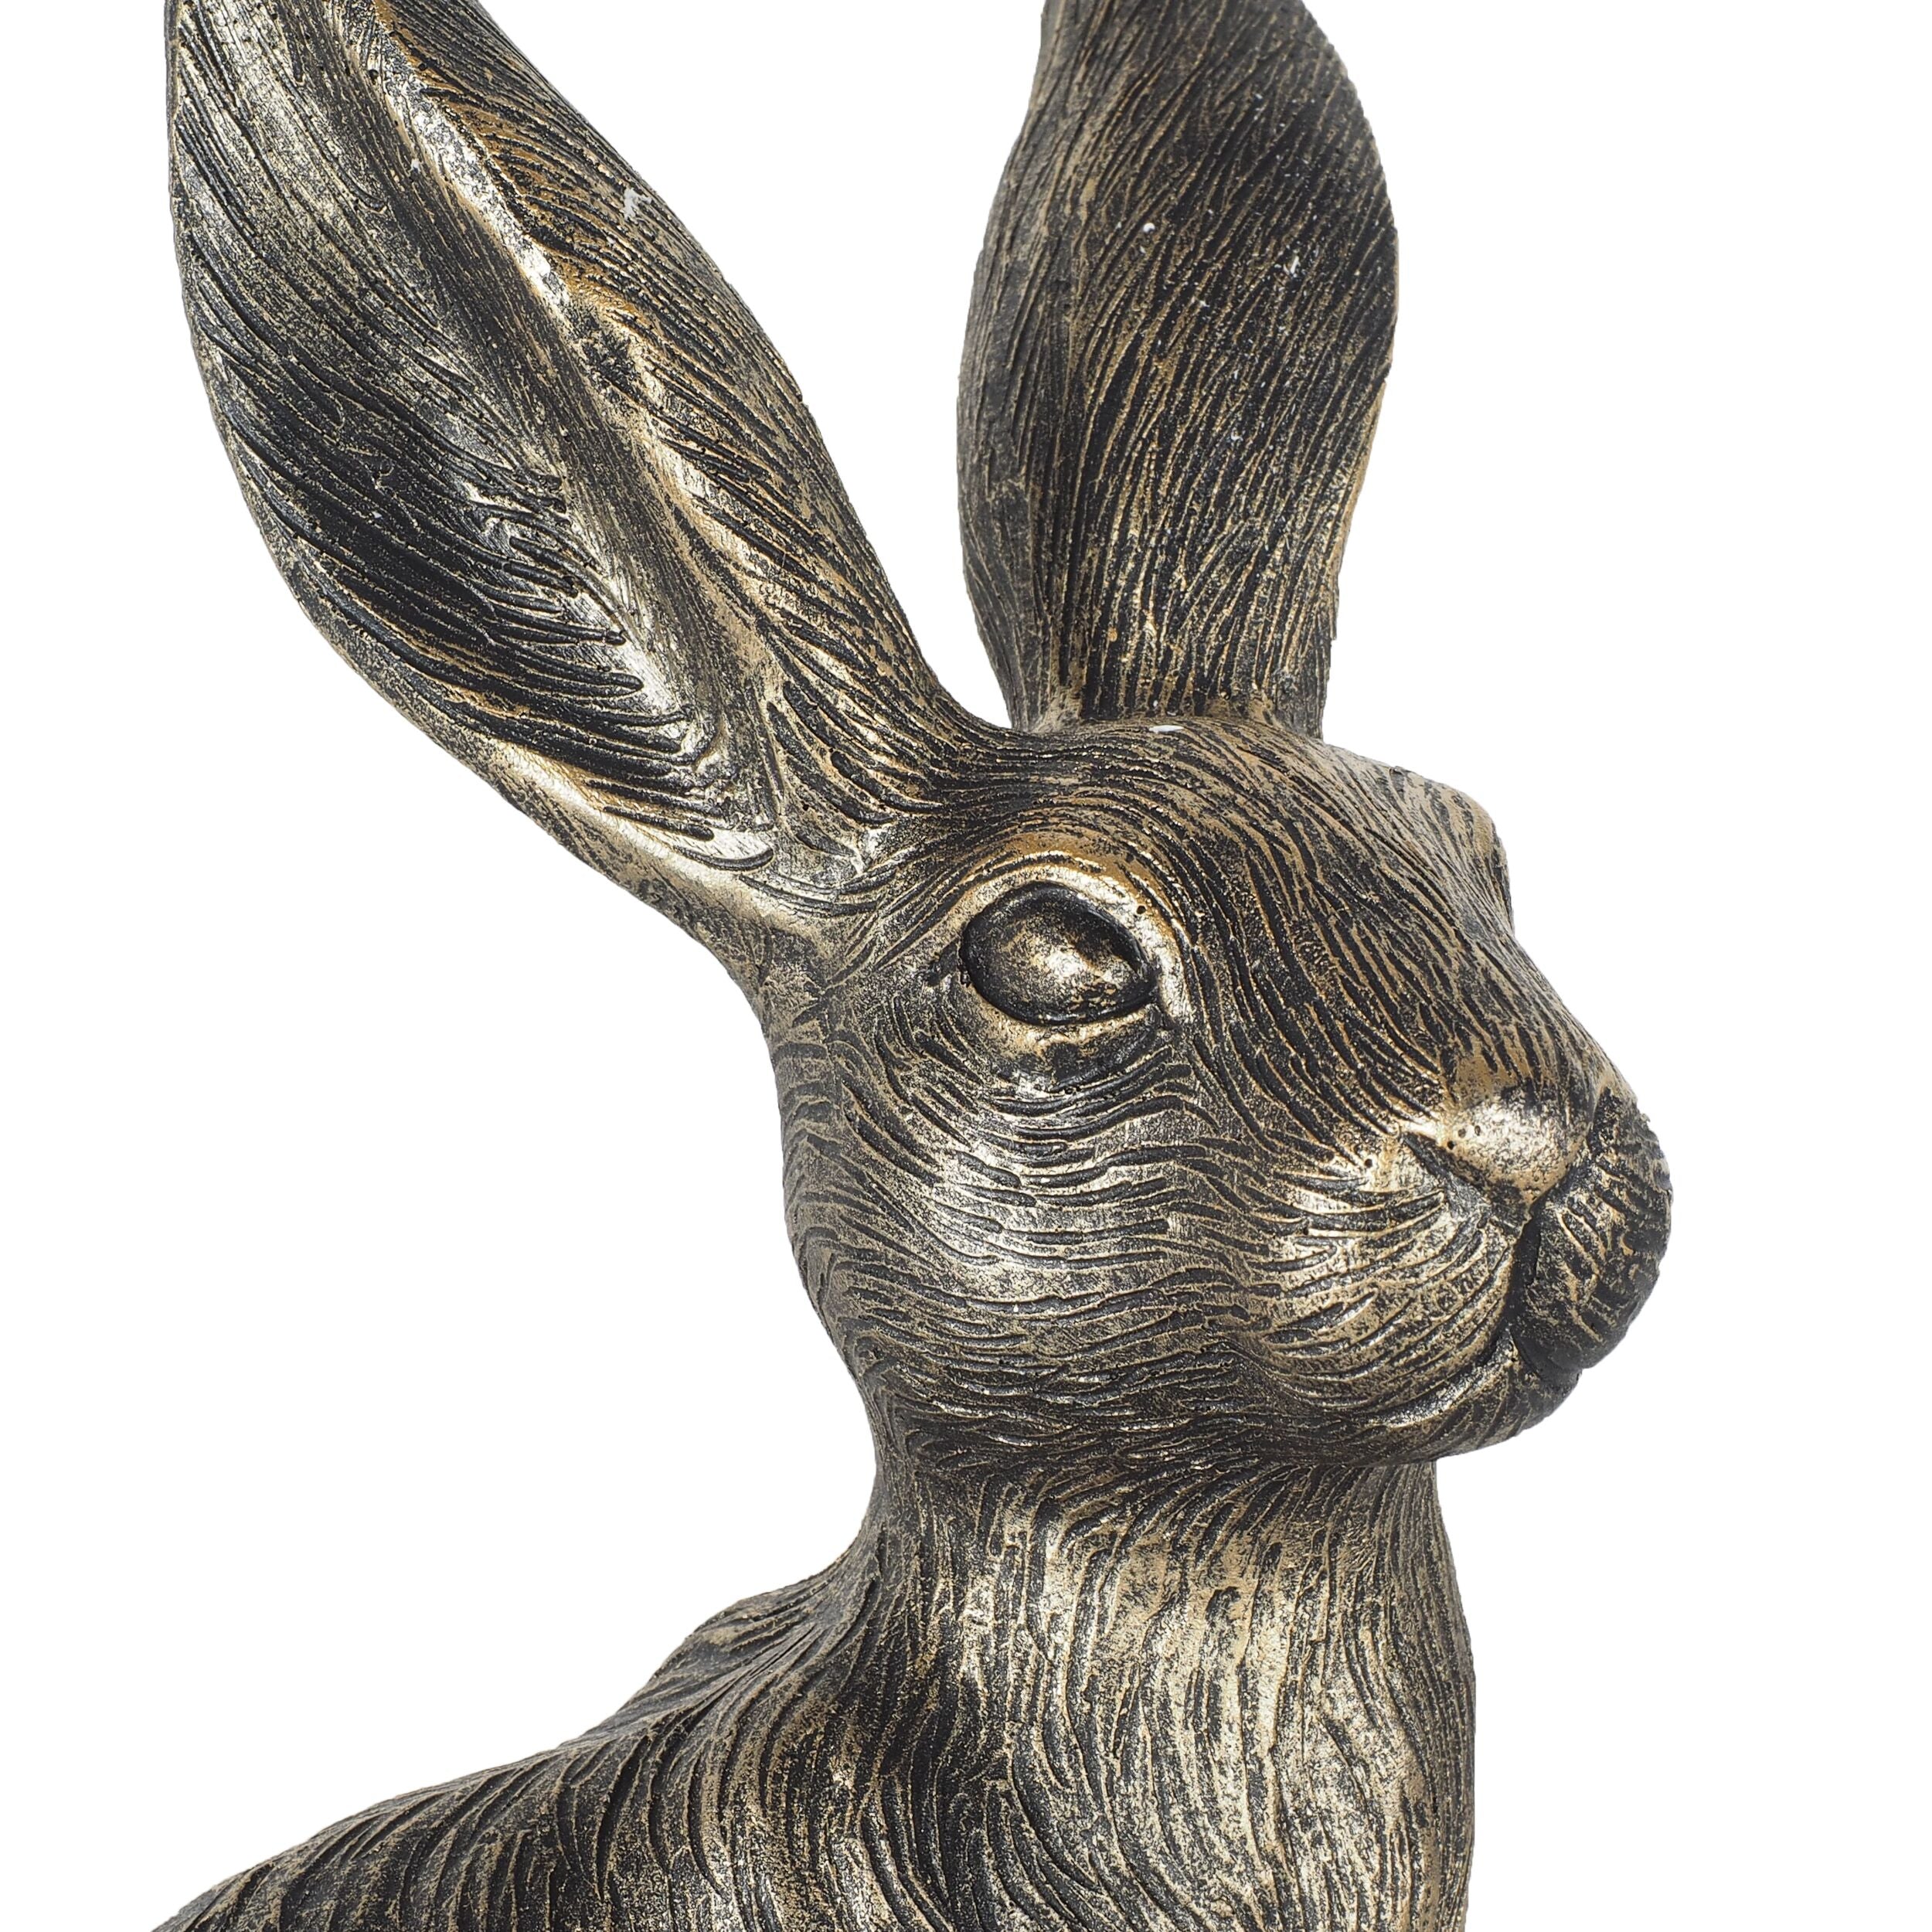 Robbie Rabbit Polyresin 27x15.5x11.5cm